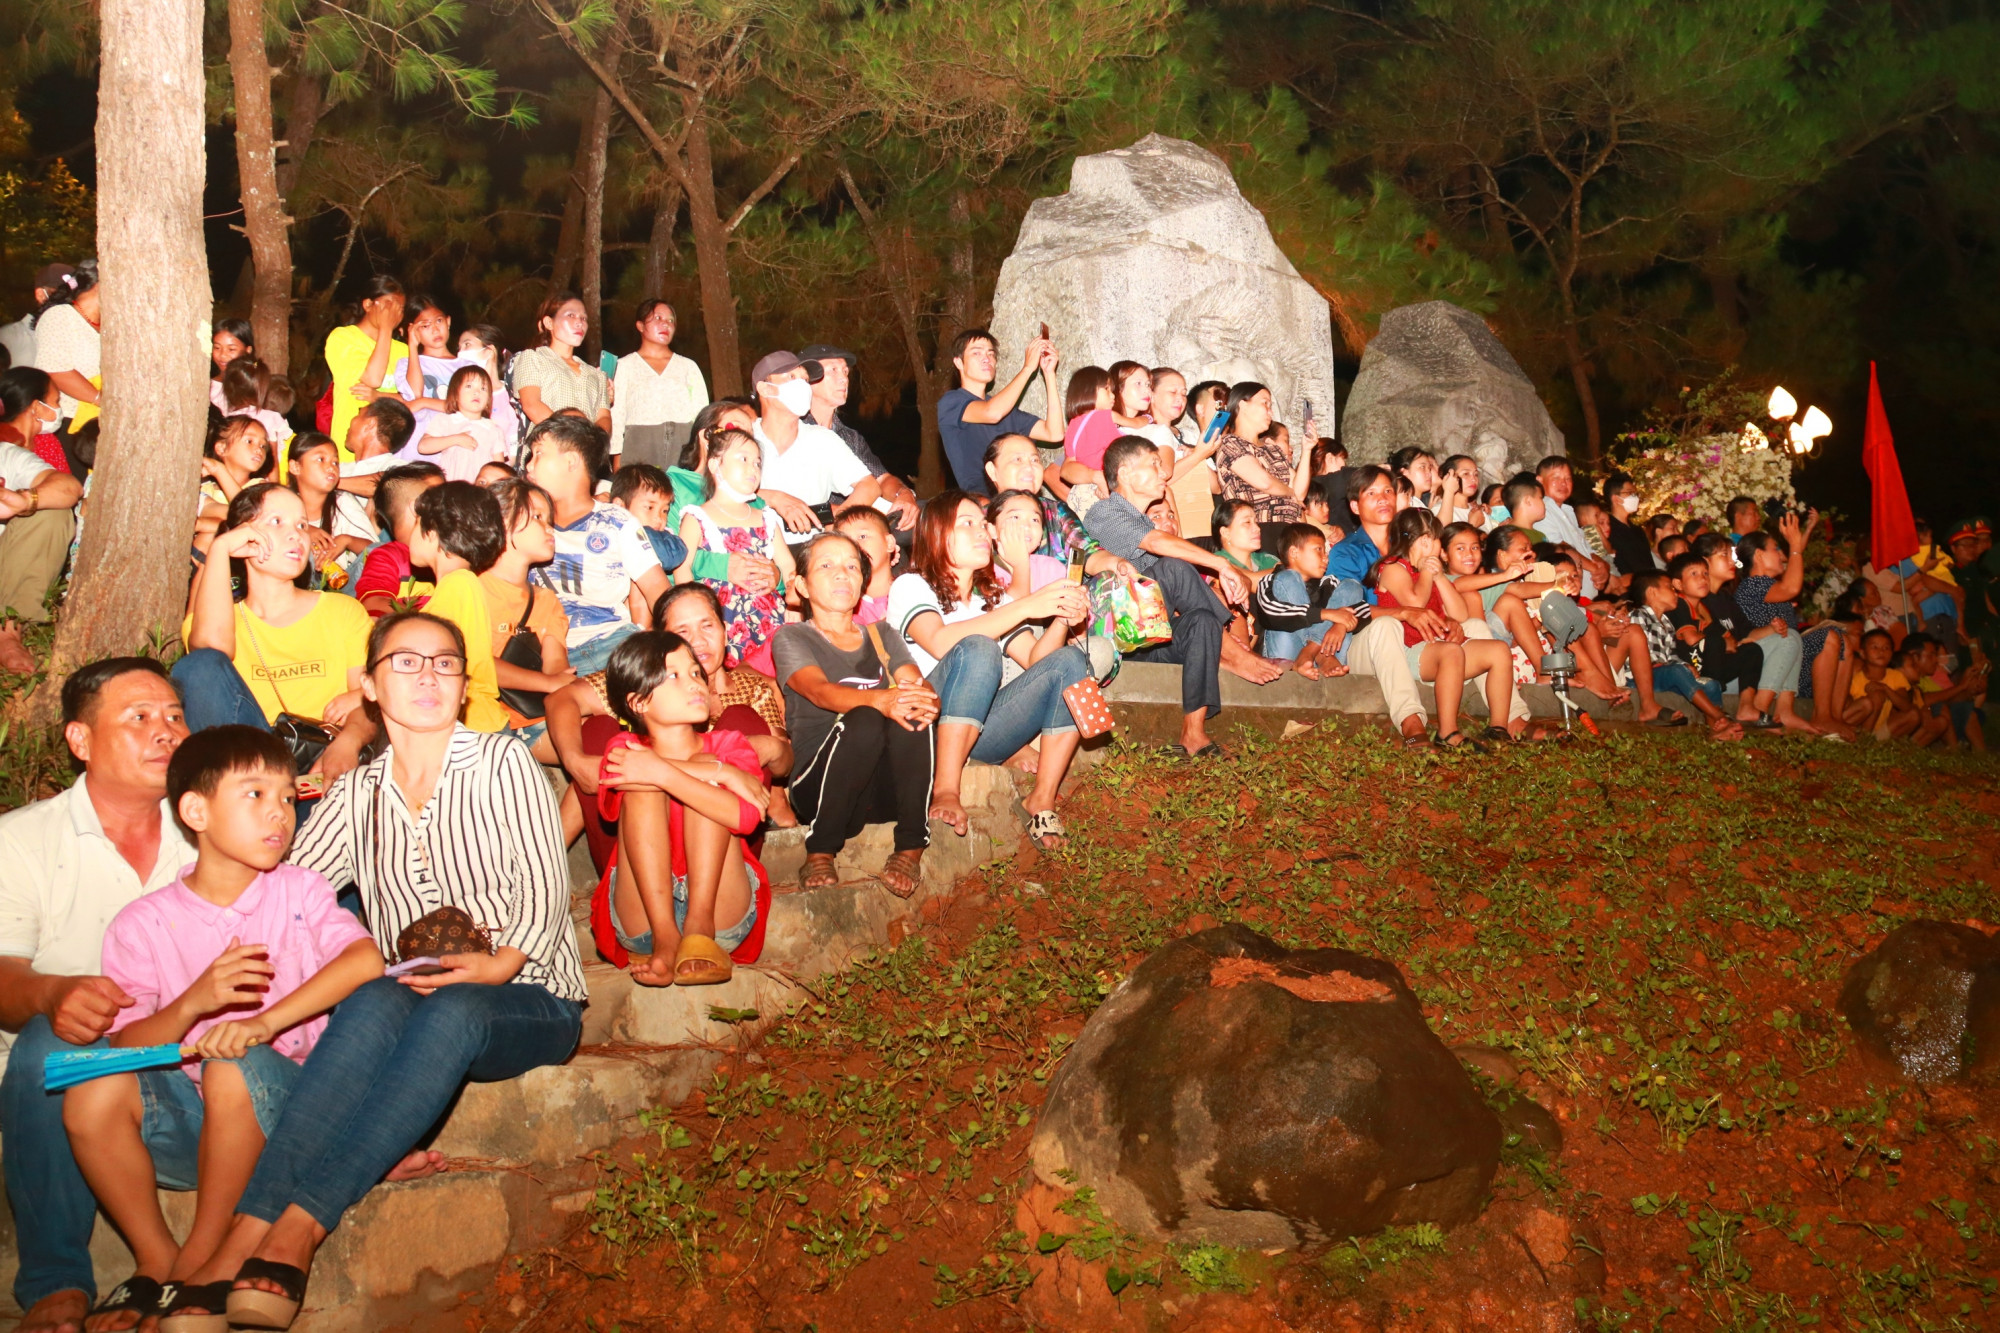 Chương trình nghệ thuật đặc biệt đã thu hút đông đảo người dân, khách hành hương về Quảng Trị đến xem